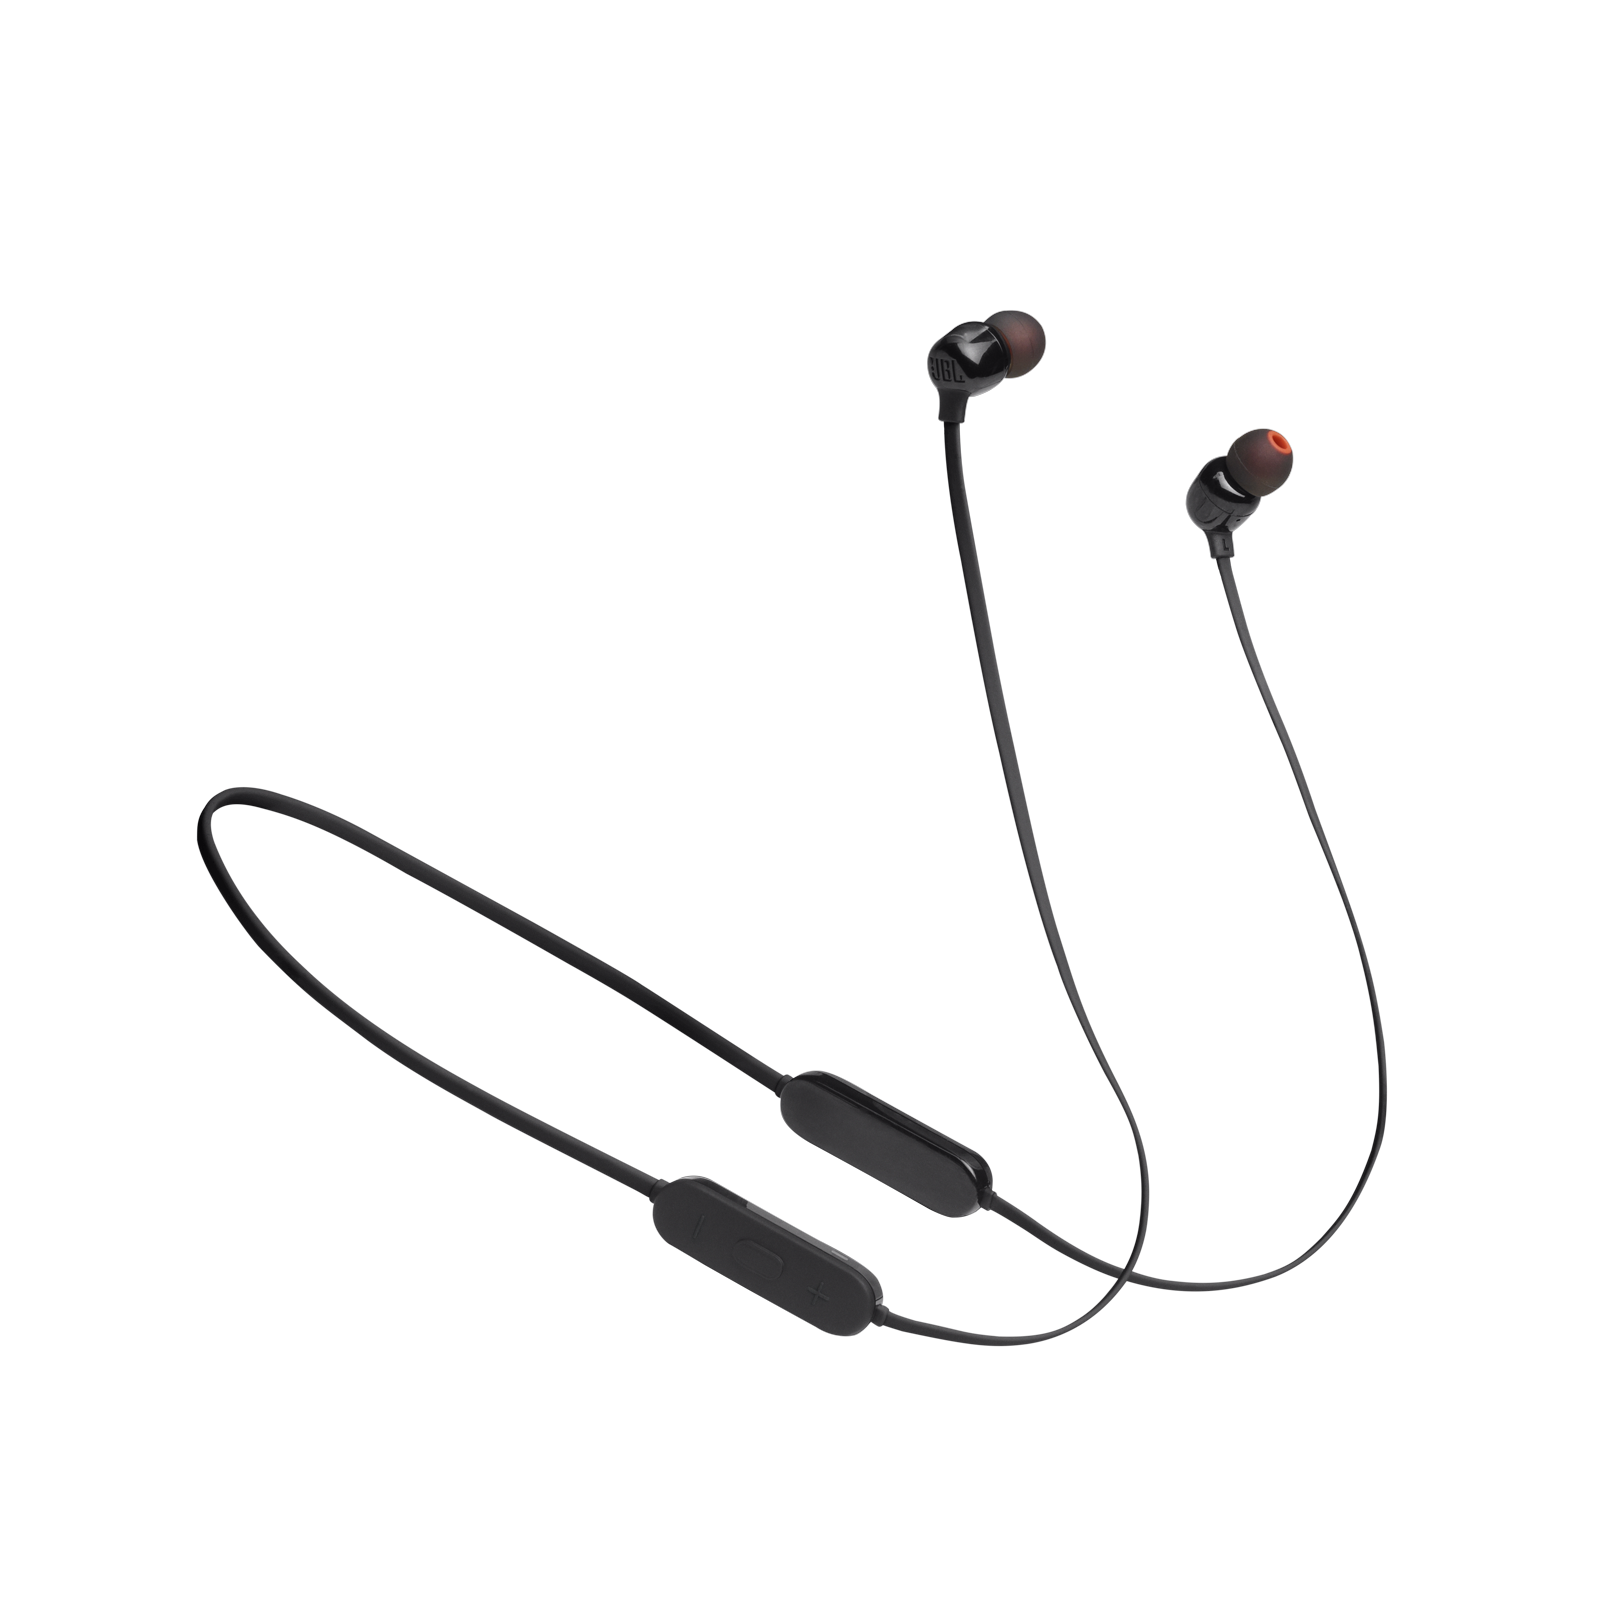 JBL TUNE 125BT Wireless in-ear headphones